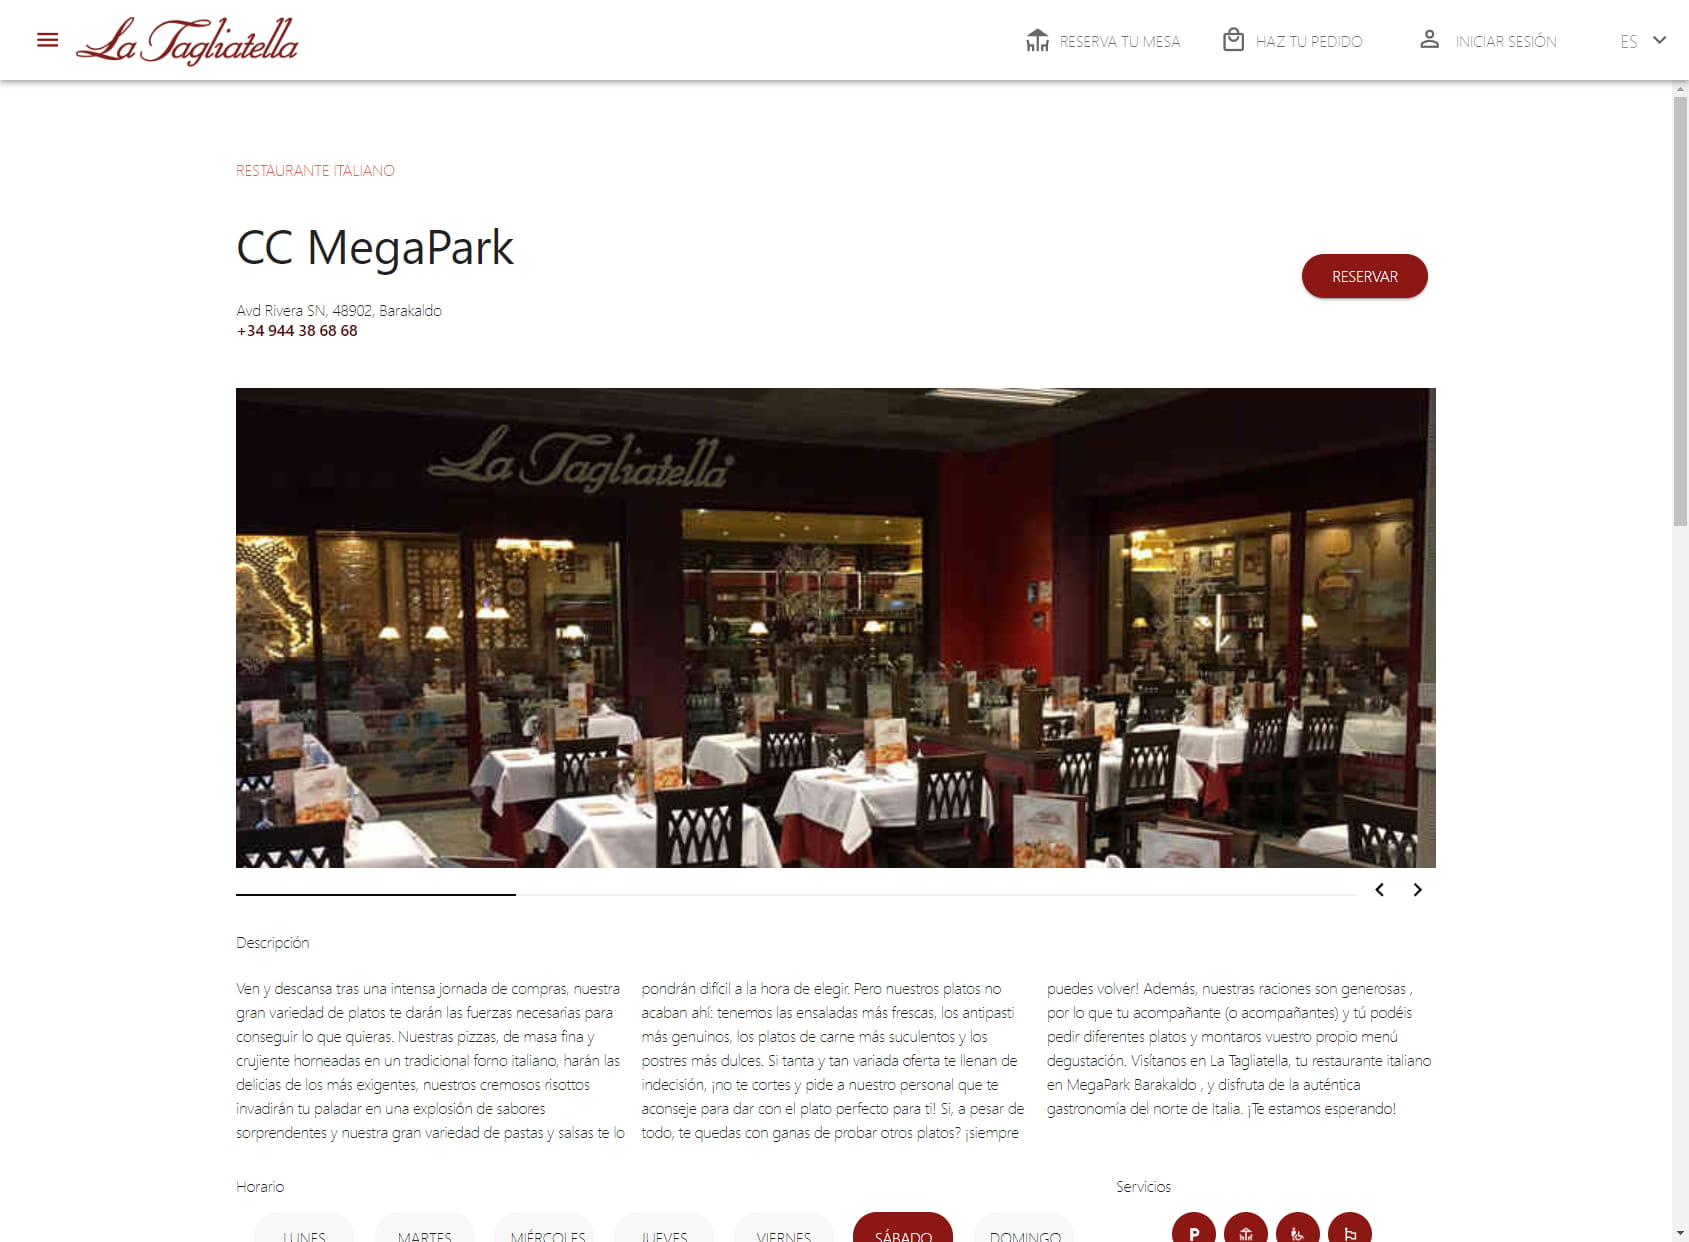 Restaurante La Tagliatella | Megapark, Barakaldo